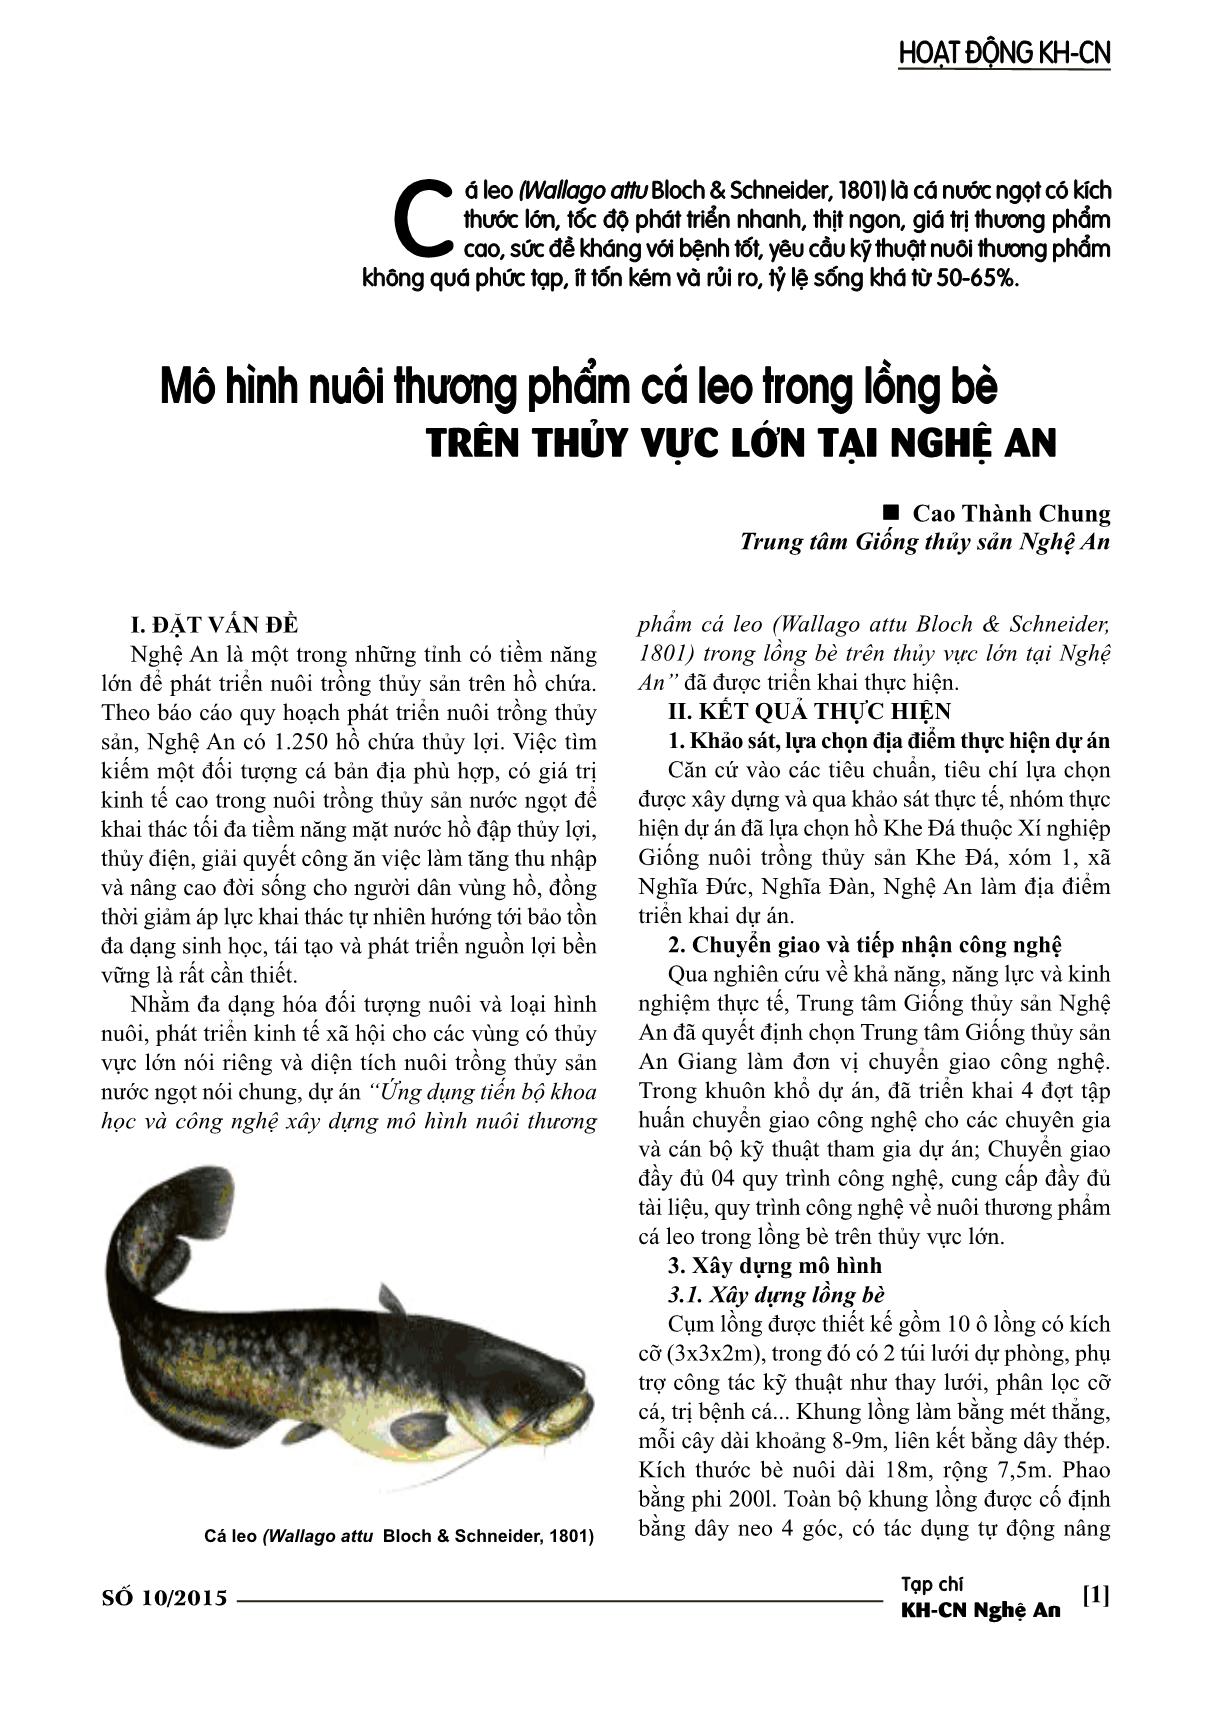 Mô hình nuôi thương phẩm cá leo trong lồng bè trên thủy vực lớn tại nghệ An trang 1